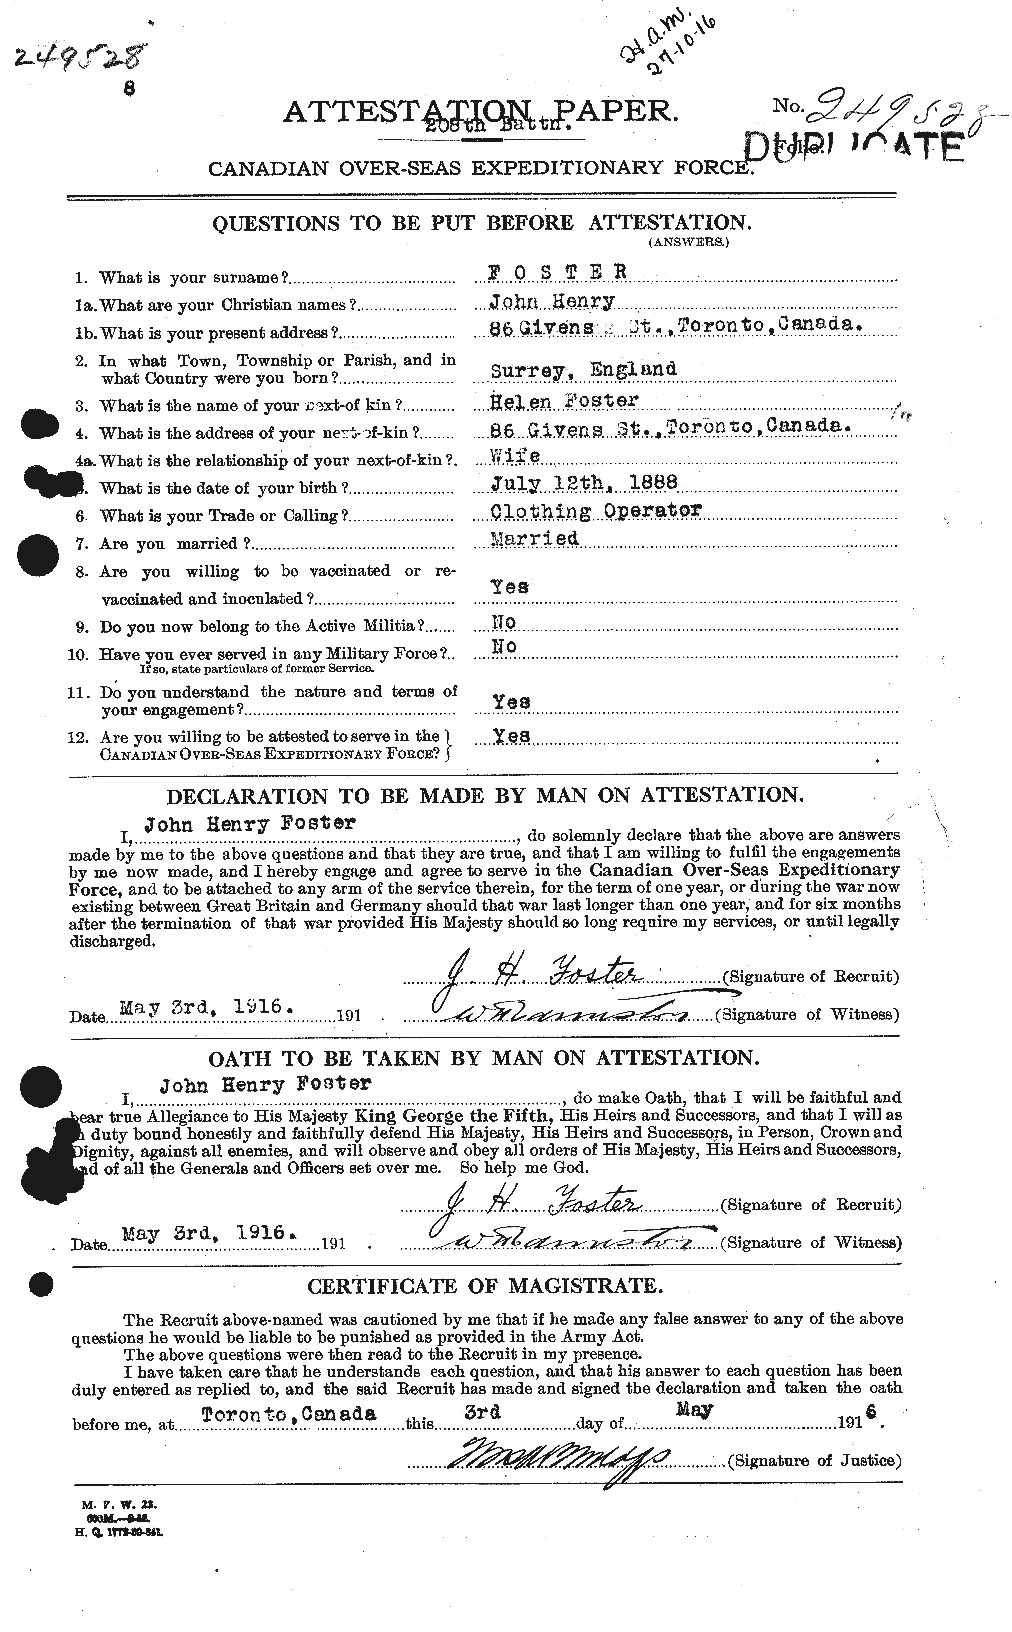 Dossiers du Personnel de la Première Guerre mondiale - CEC 333363a